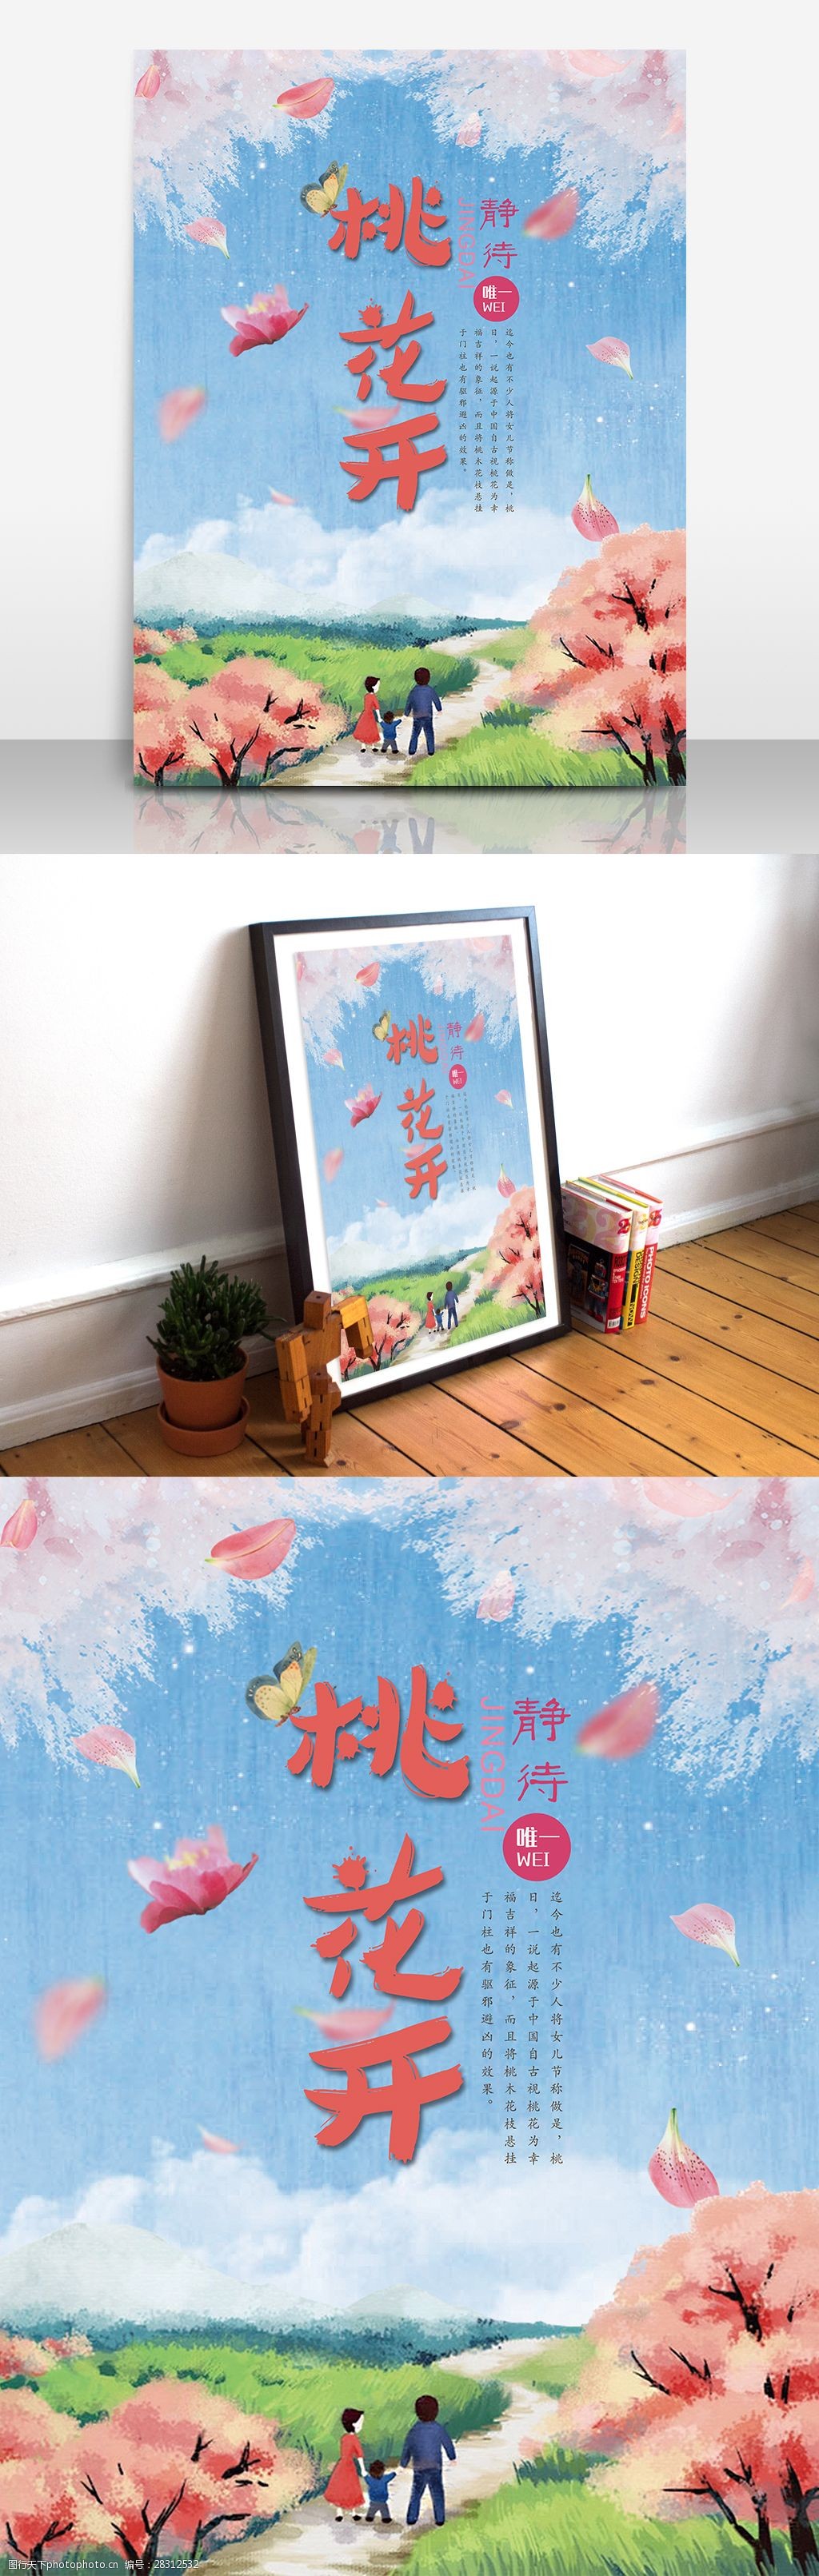 关键词:桃花节手绘插画海报设计 桃花 桃花节 春天 清新 文艺 手绘